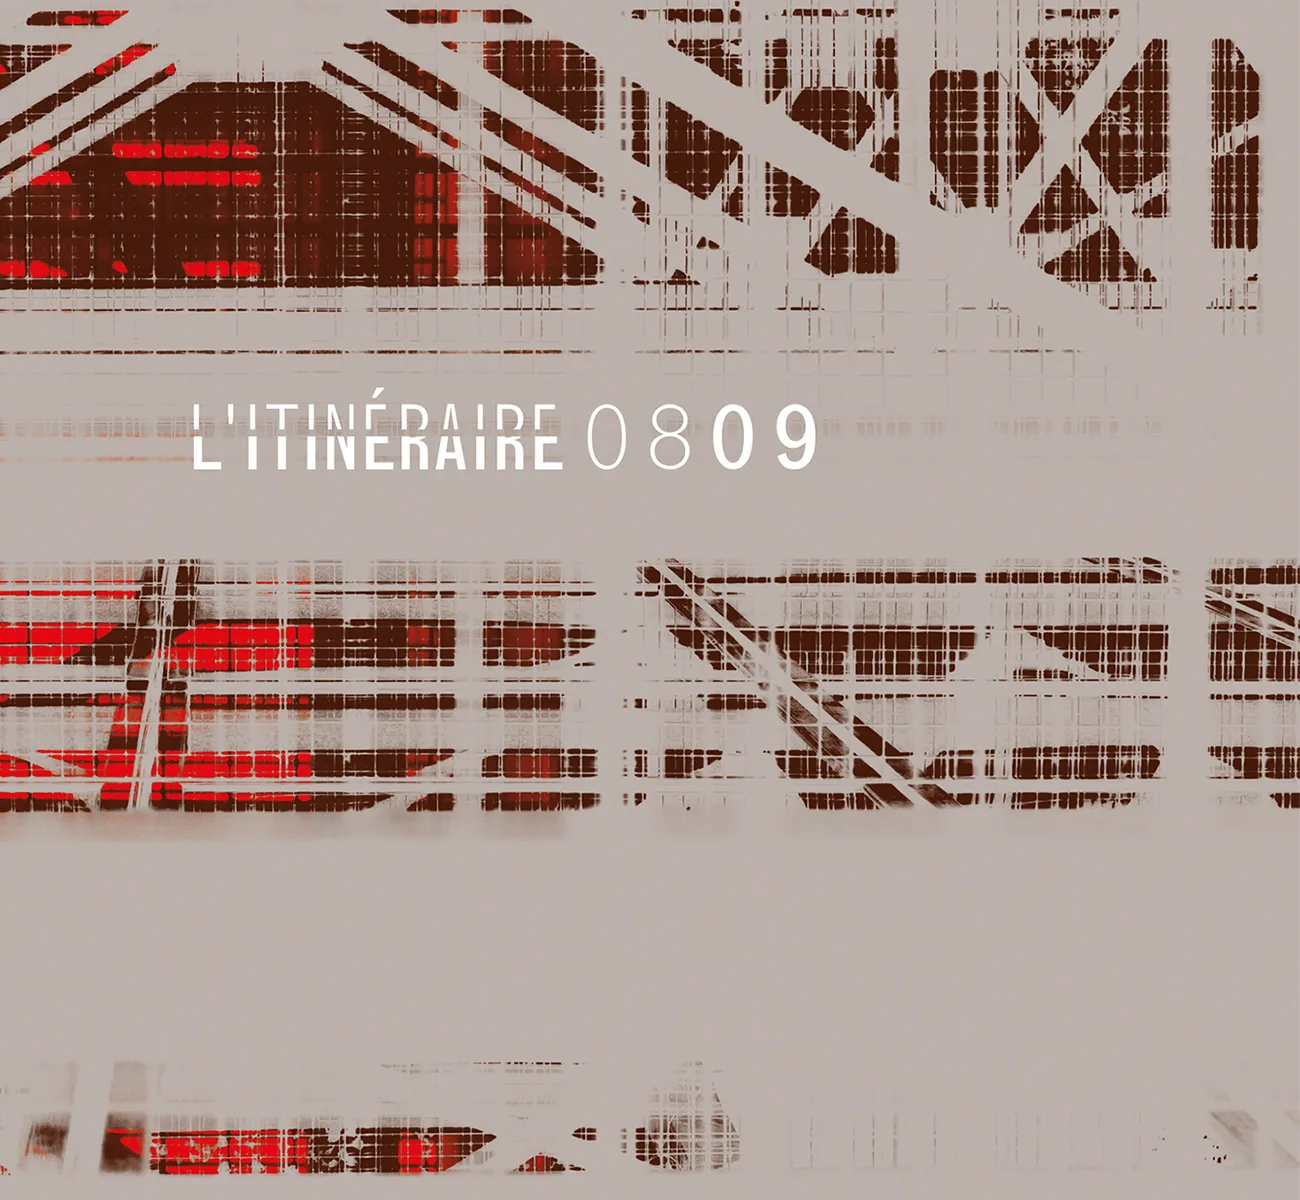 Image de couverture du projet L'Itinéraire 2008 2009 de l'ensemble musical L'Itinéraire de la page portfolio